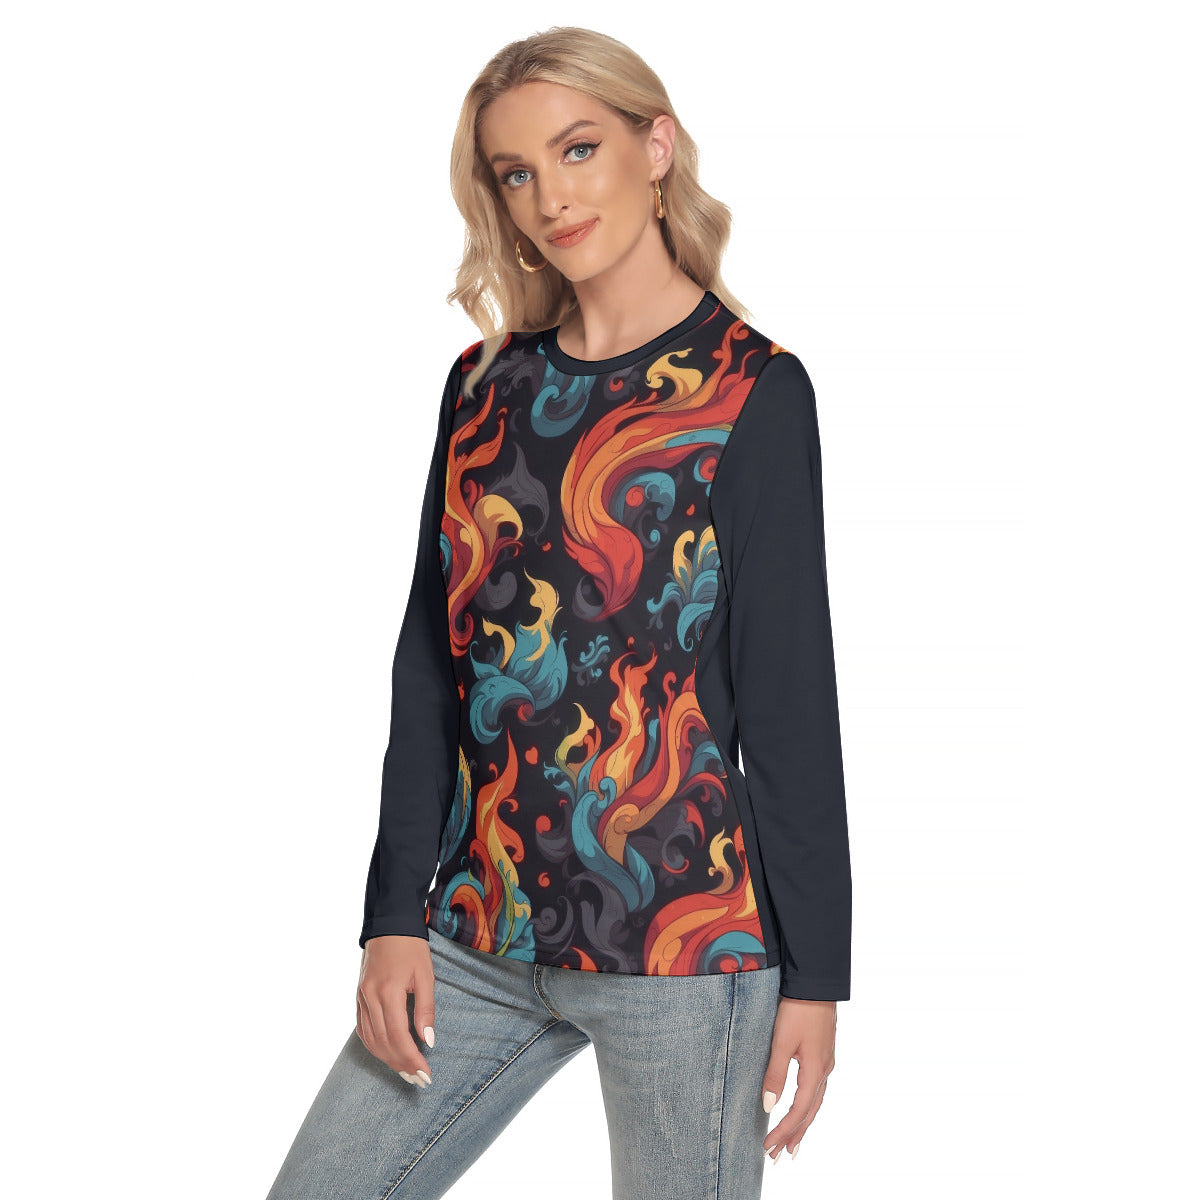 Fantacy Flames -- Women's O-neck Long Sleeve T-shirt